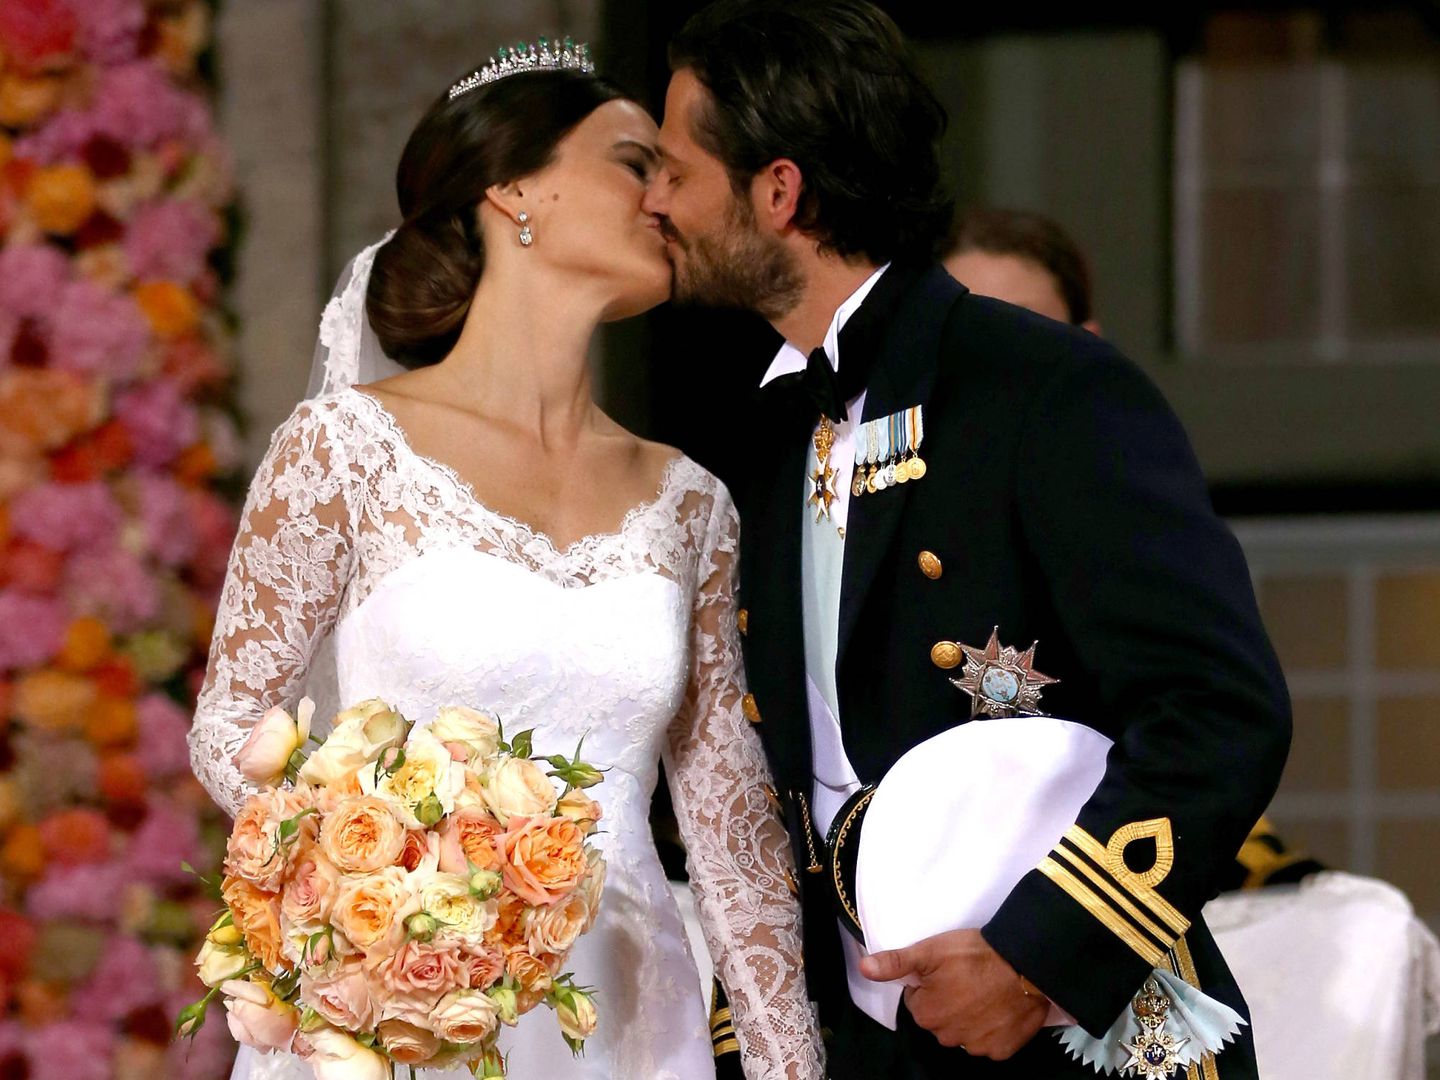 Detalle de las manchas de Sofía Hellqvist el día de su boda con el príncipe Carlos Gustavo de Suecia. (Getty)